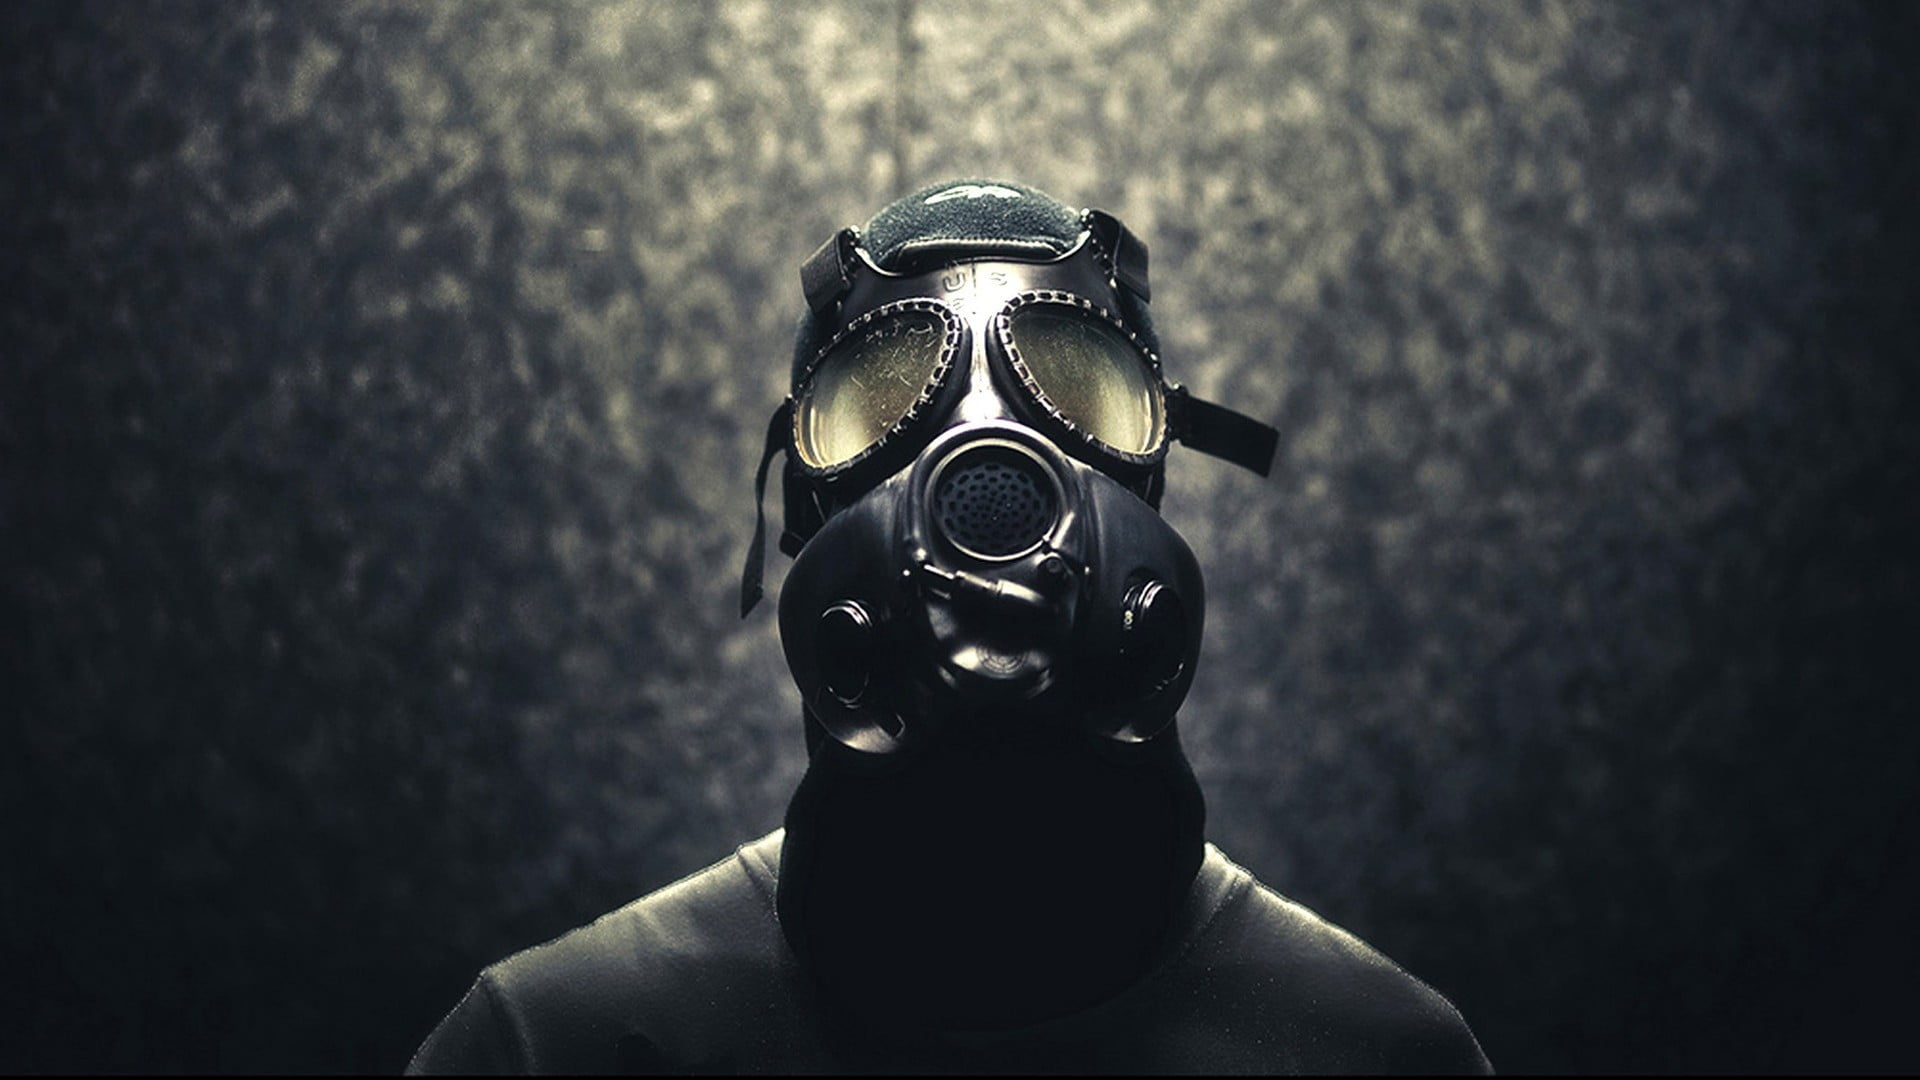 black gas mask, gas masks, men, protection, security, portrait